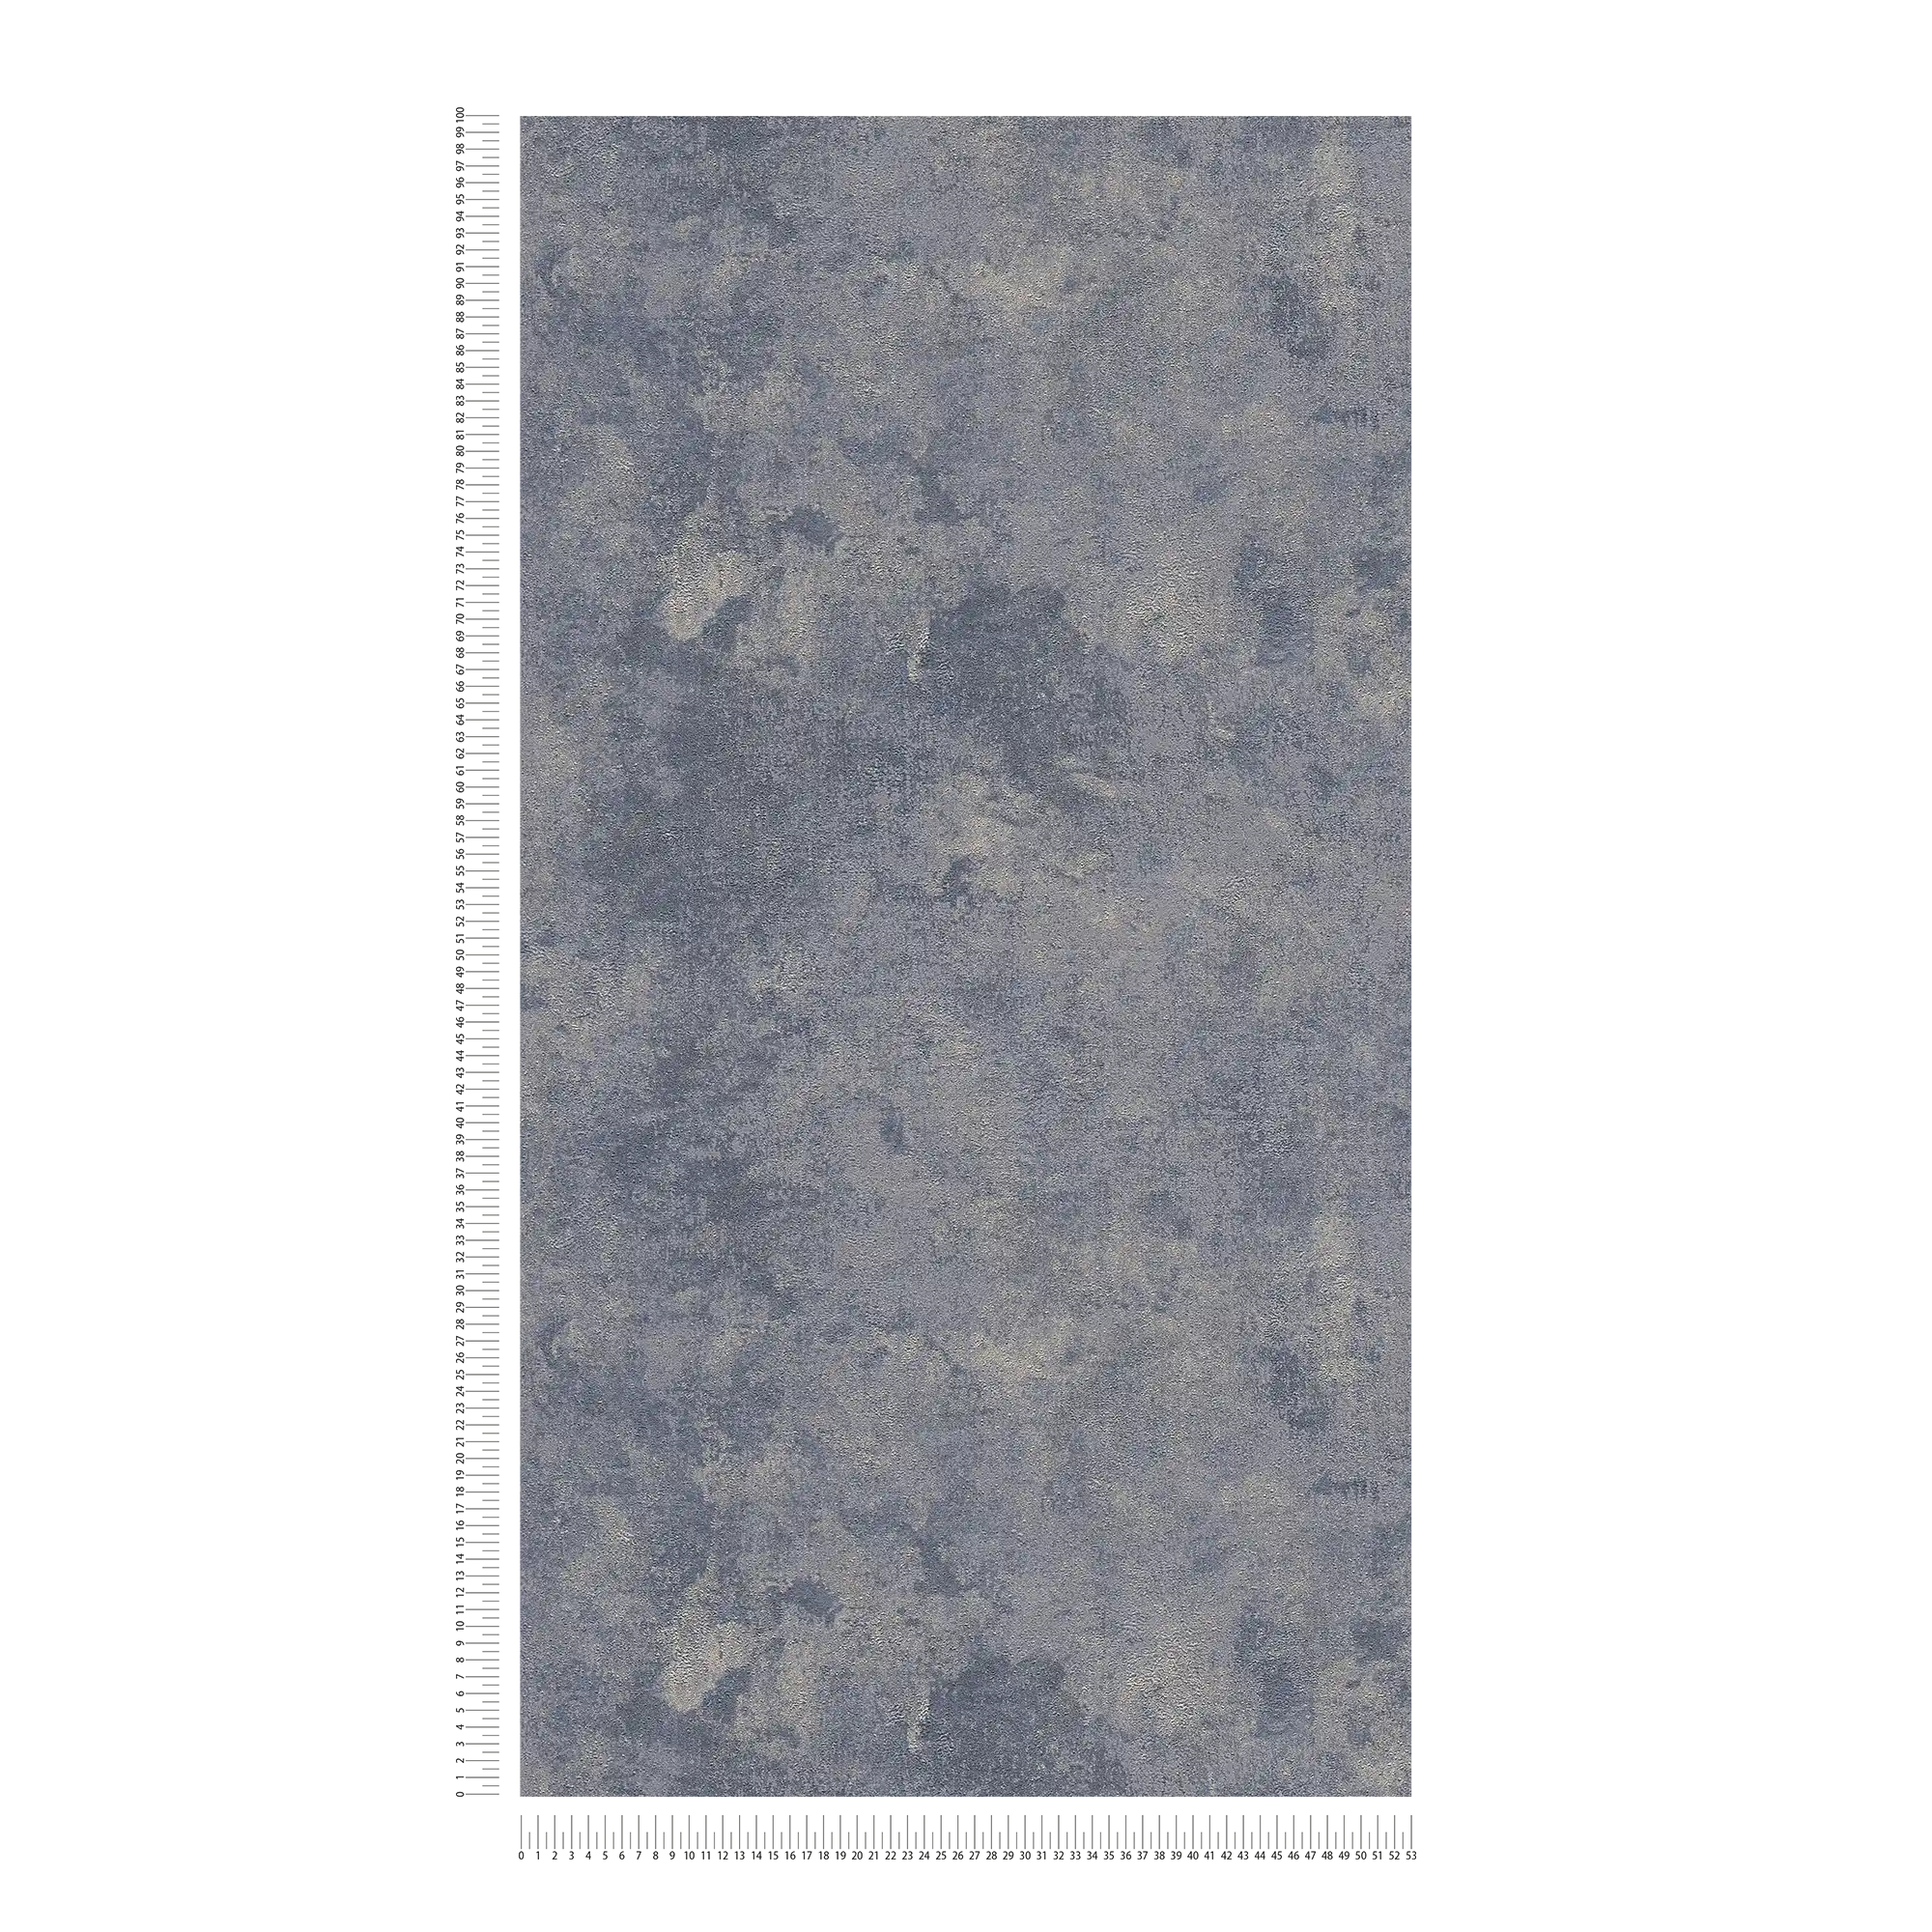             Carta da parati struttura ruvida ed effetto lucido - blu, argento, grigio
        